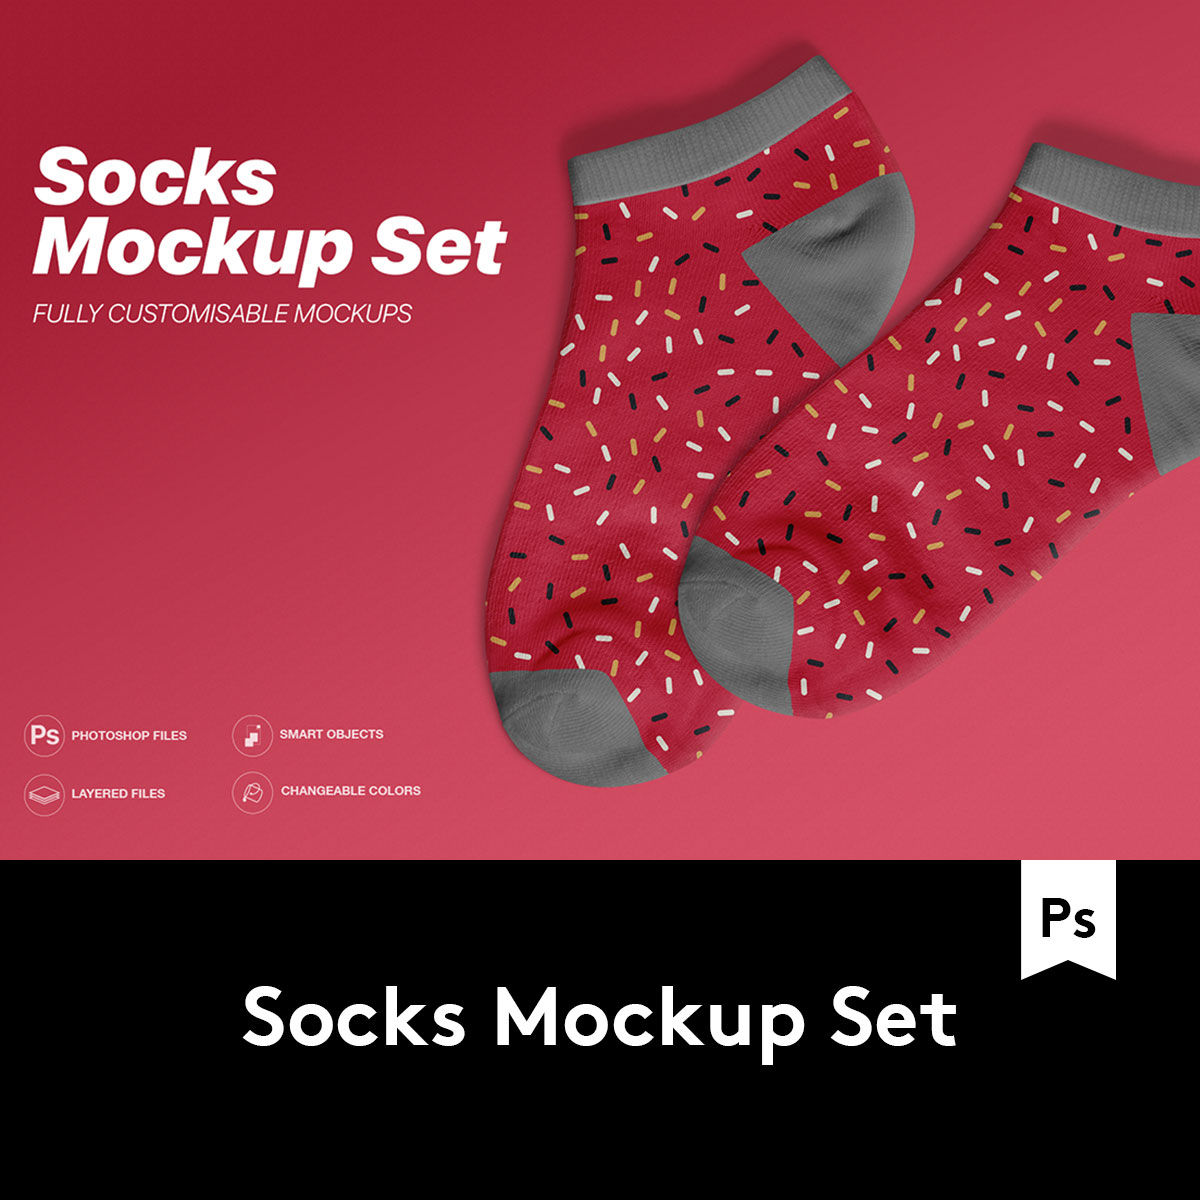 Socks Mockup Set 5款多规格袜子设计样机模板素材 M2020032603